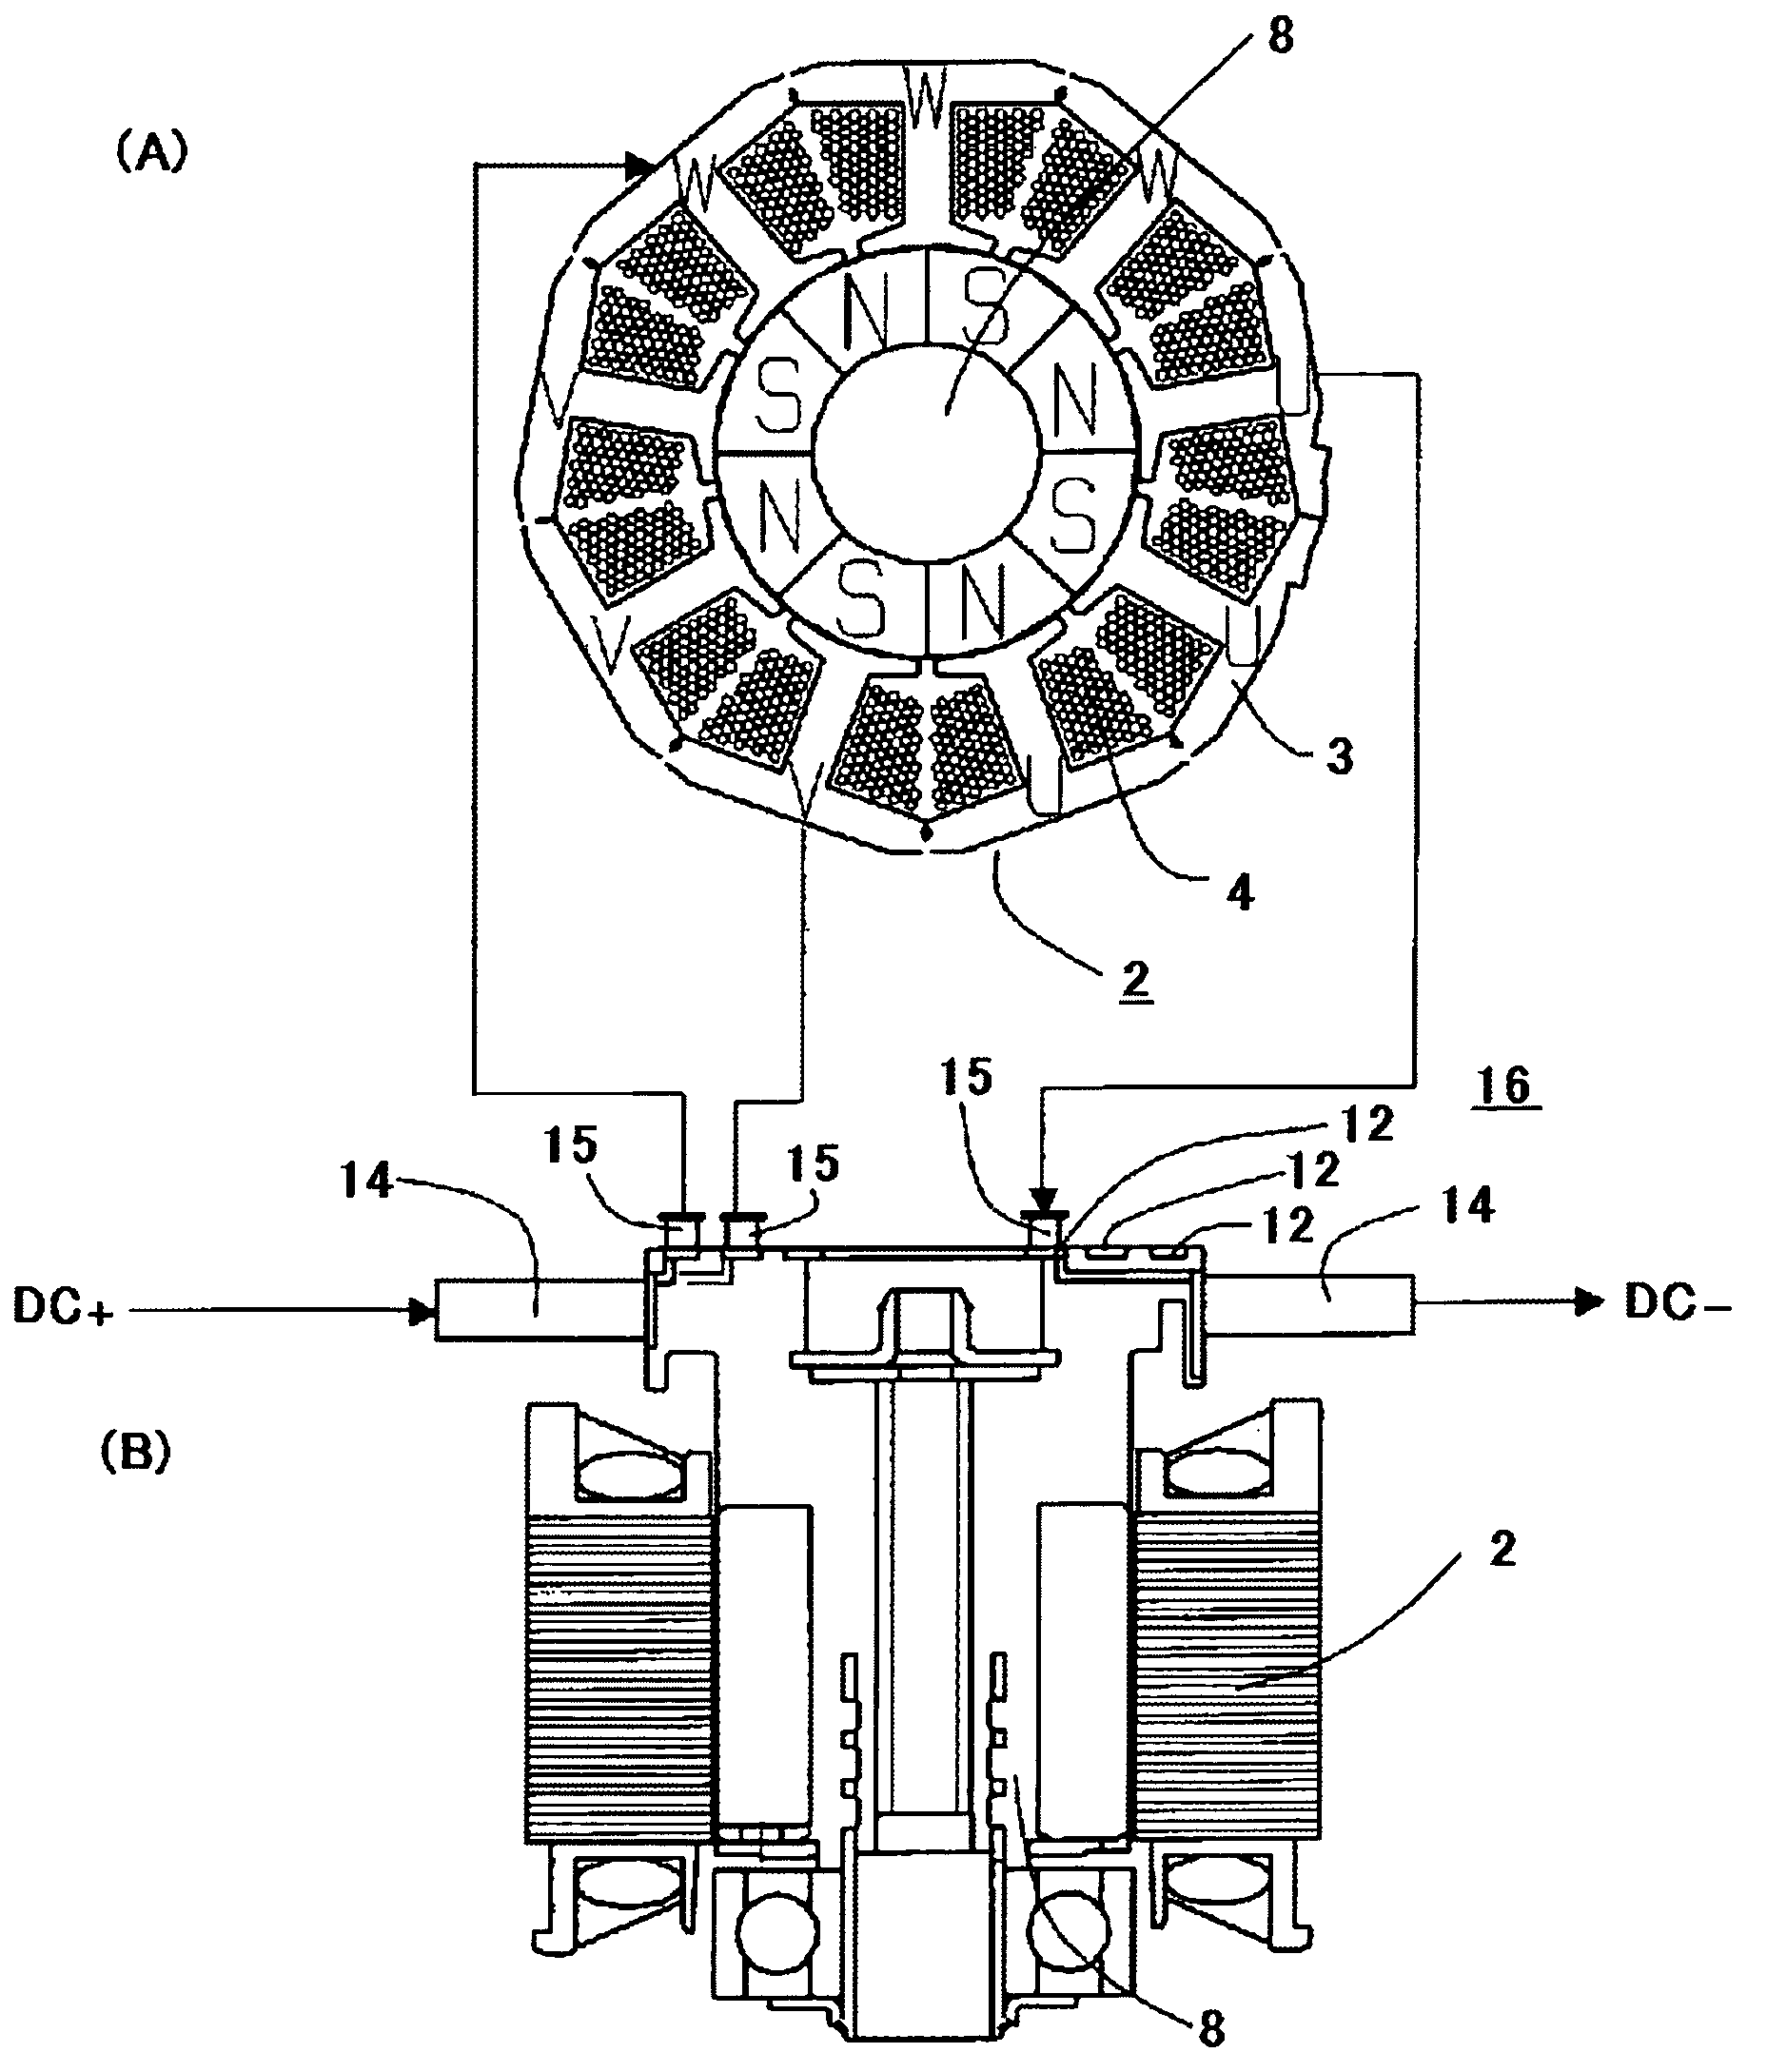 DC-motor